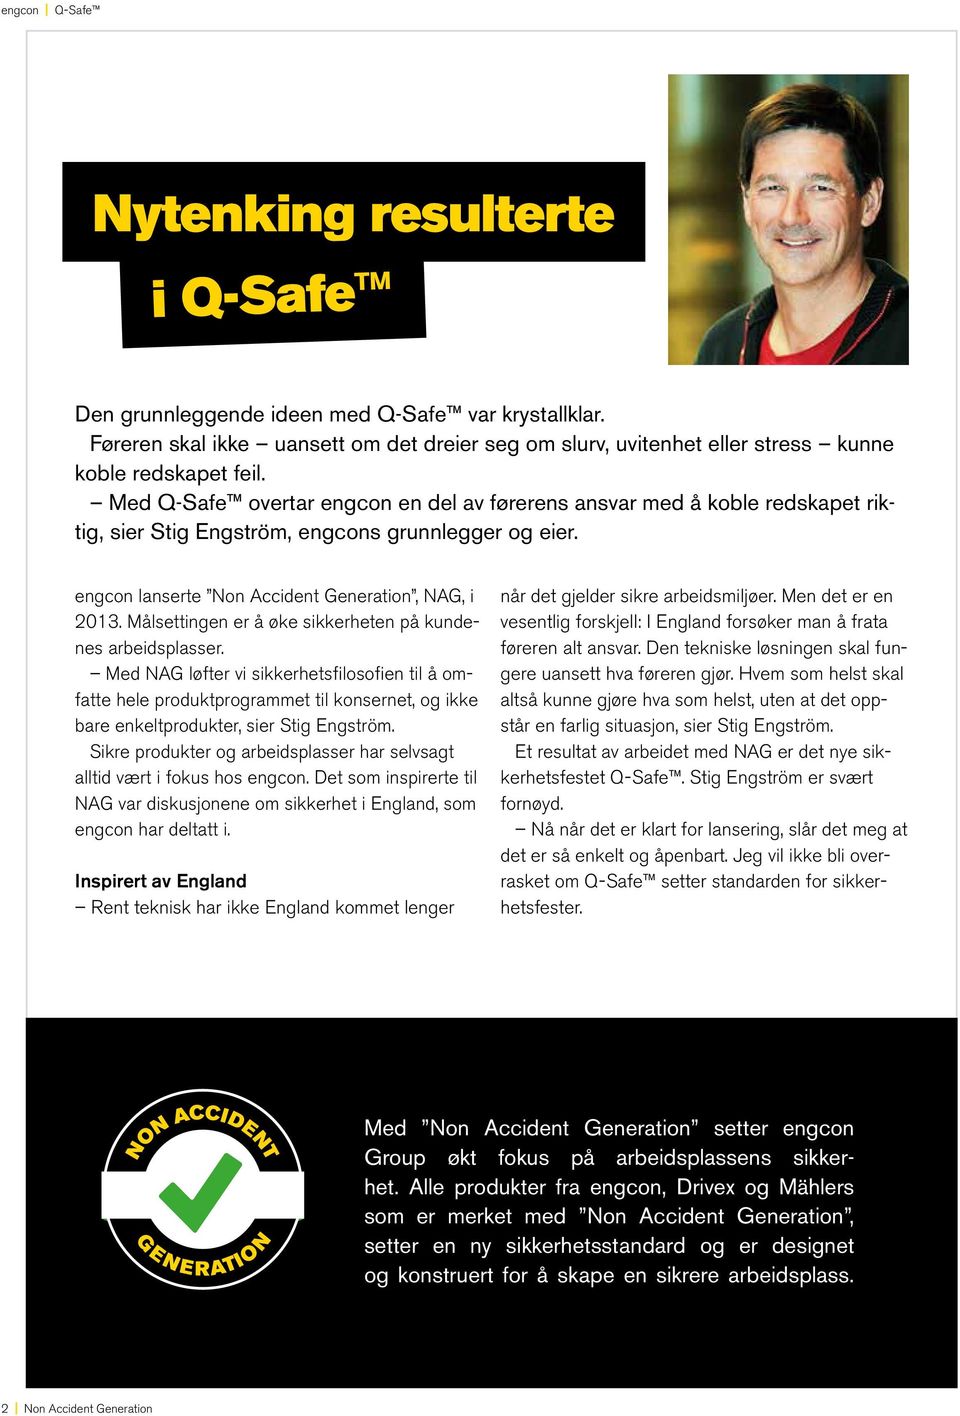 Med Q-Safe overtar engcon en del av førerens ansvar med å koble redskapet riktig, sier Stig Engström, engcons grunnlegger og eier. engcon lanserte Non Accident Generation, NAG, i 2013.